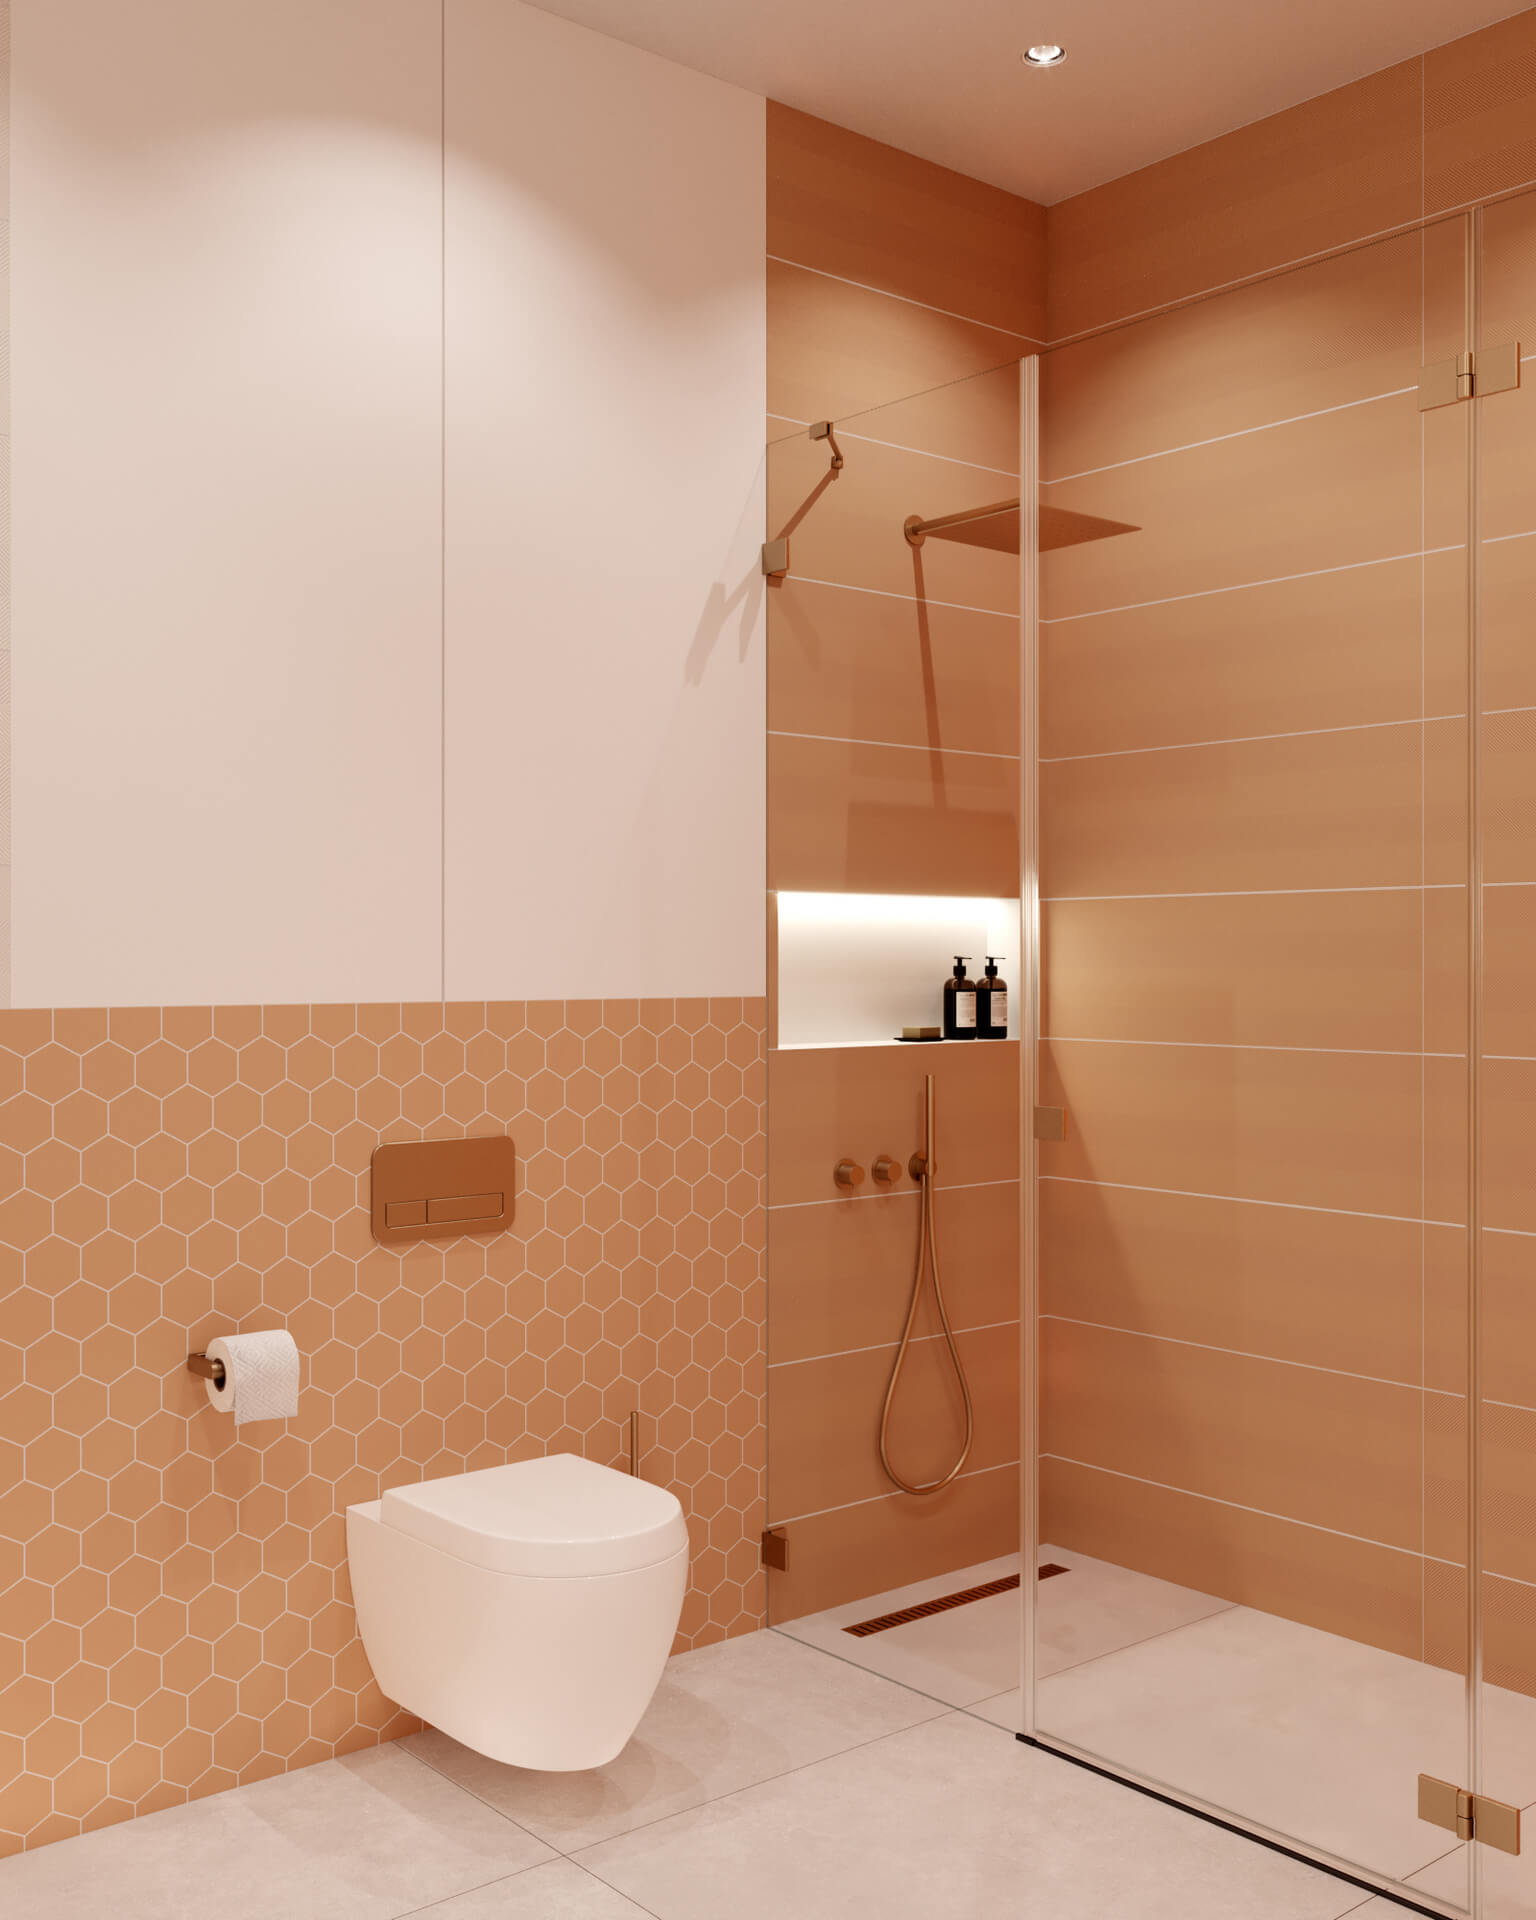  villa tasarım 5188 Dubleks Apartman Dairesi Tasarımı Konutlar